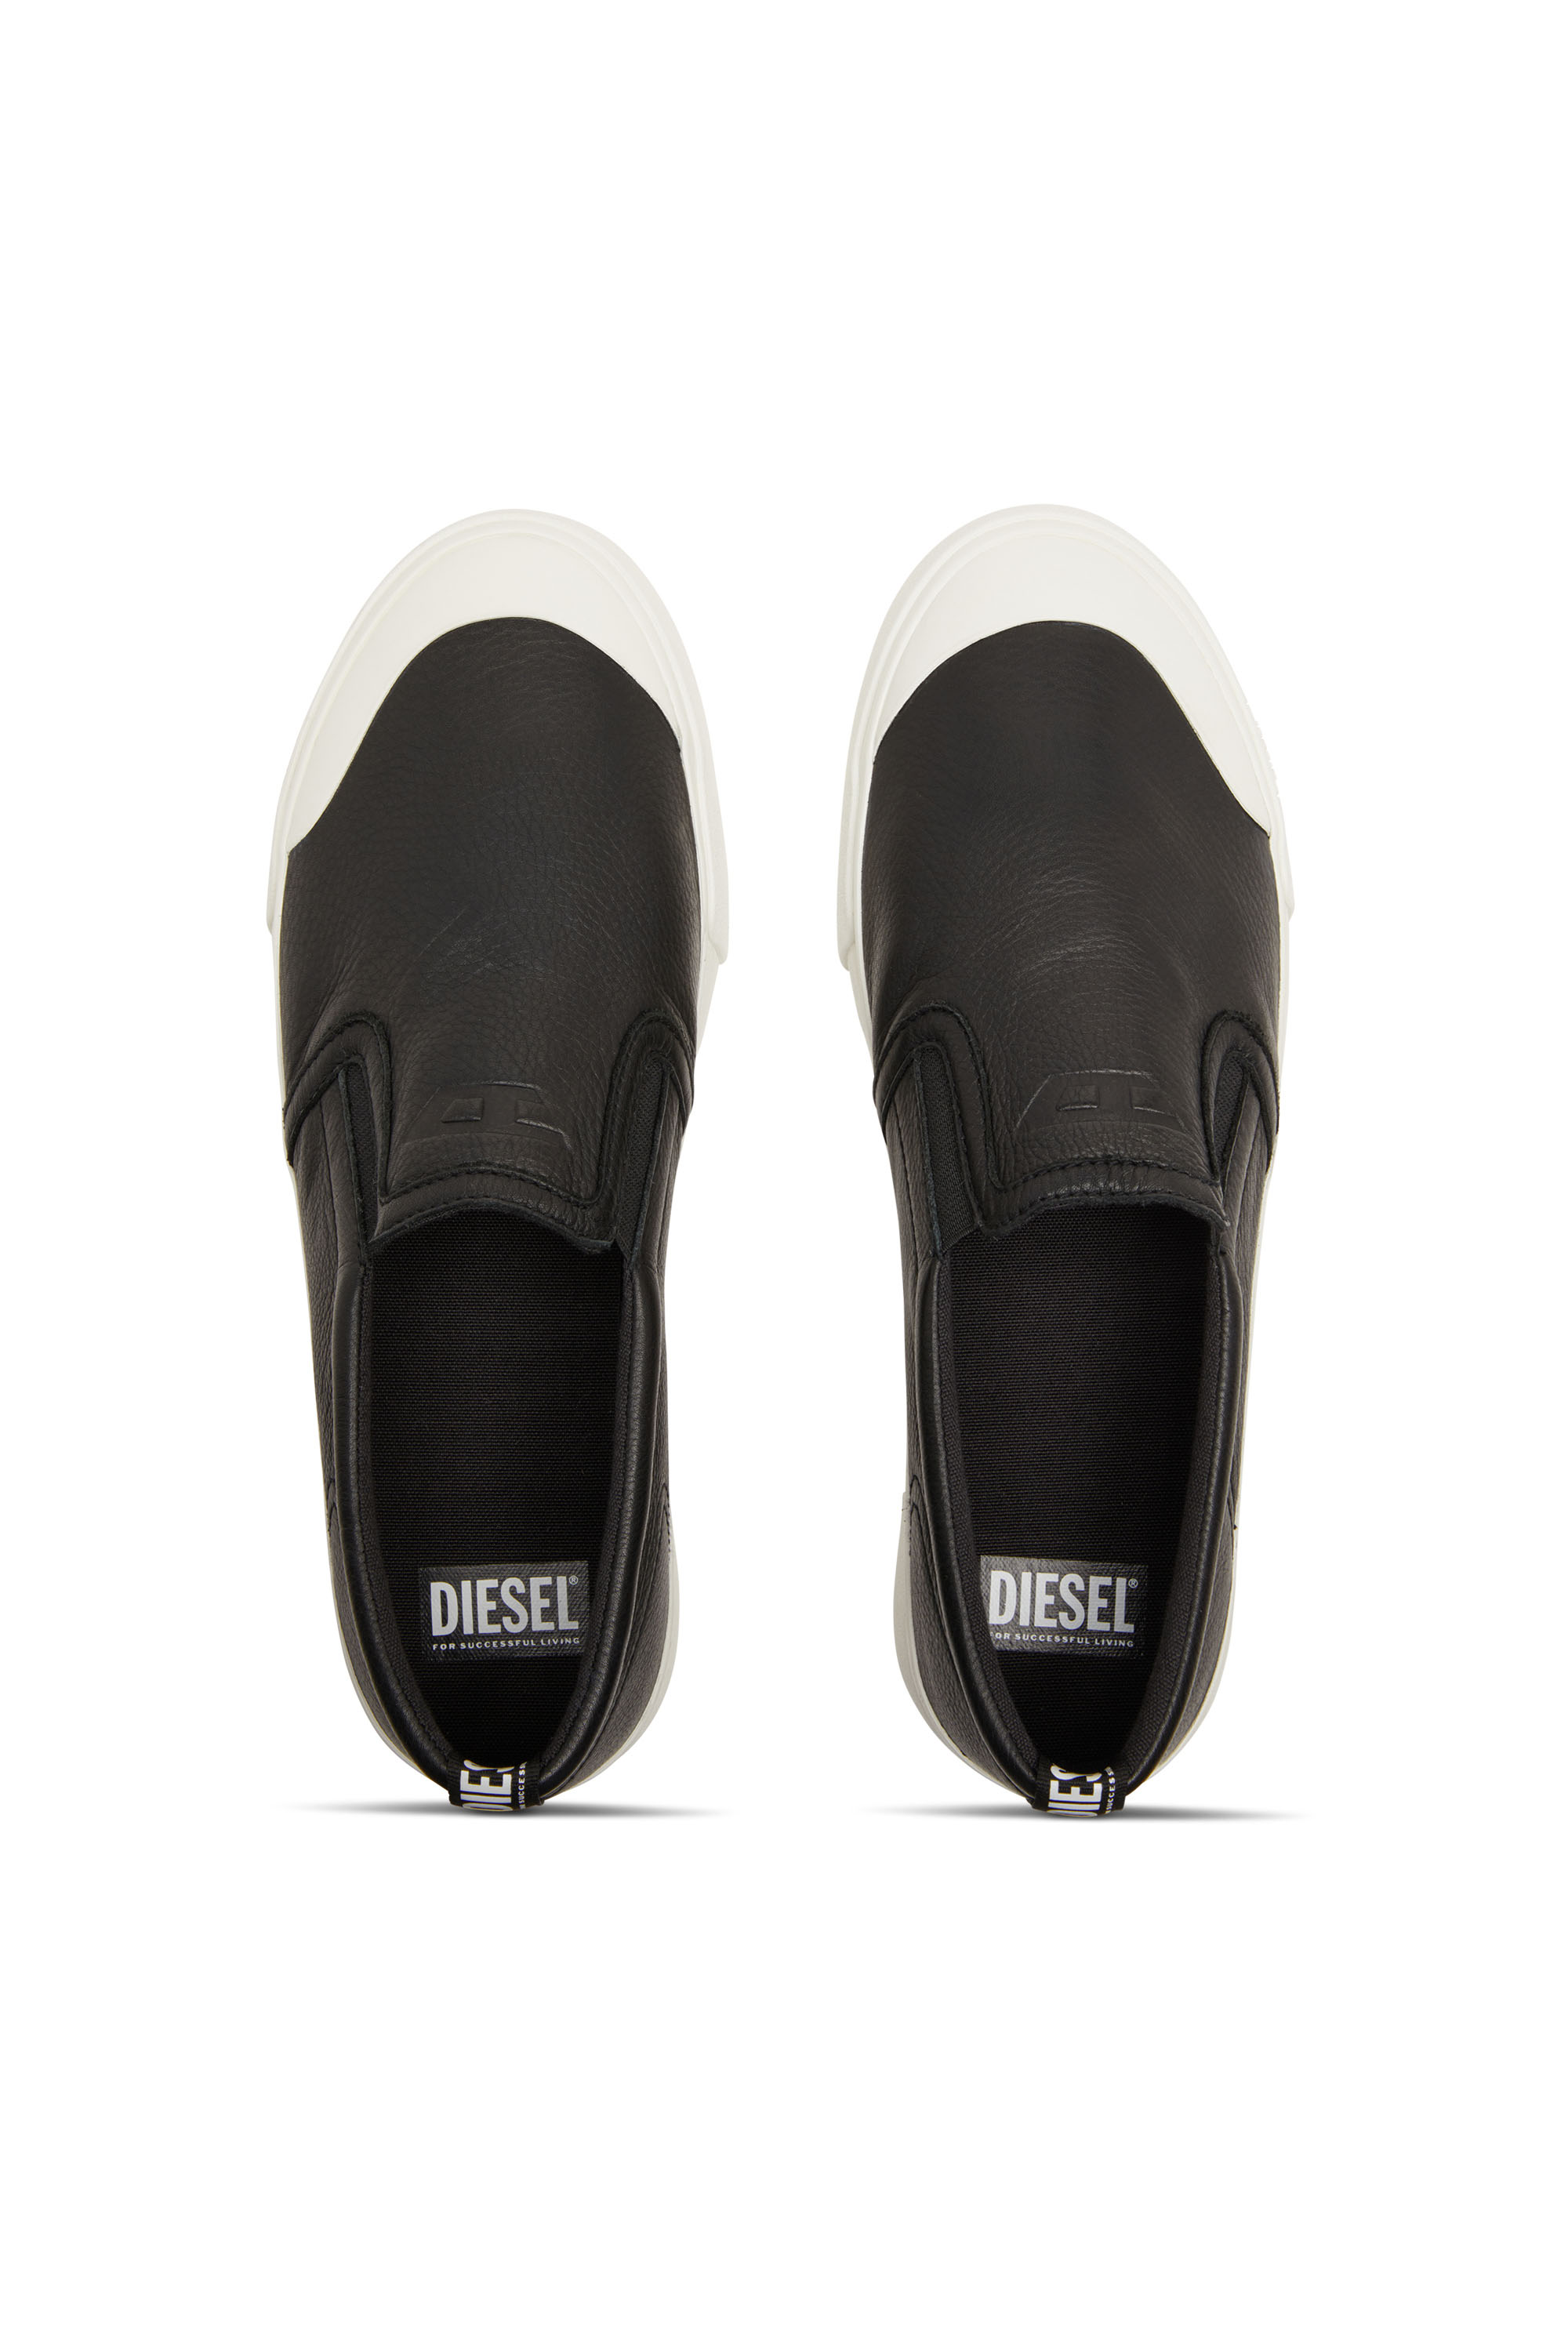 Diesel - S-ATHOS SLIP ON, Male S-Athos-Slip-on sneakers in plain leather in Black - Image 5